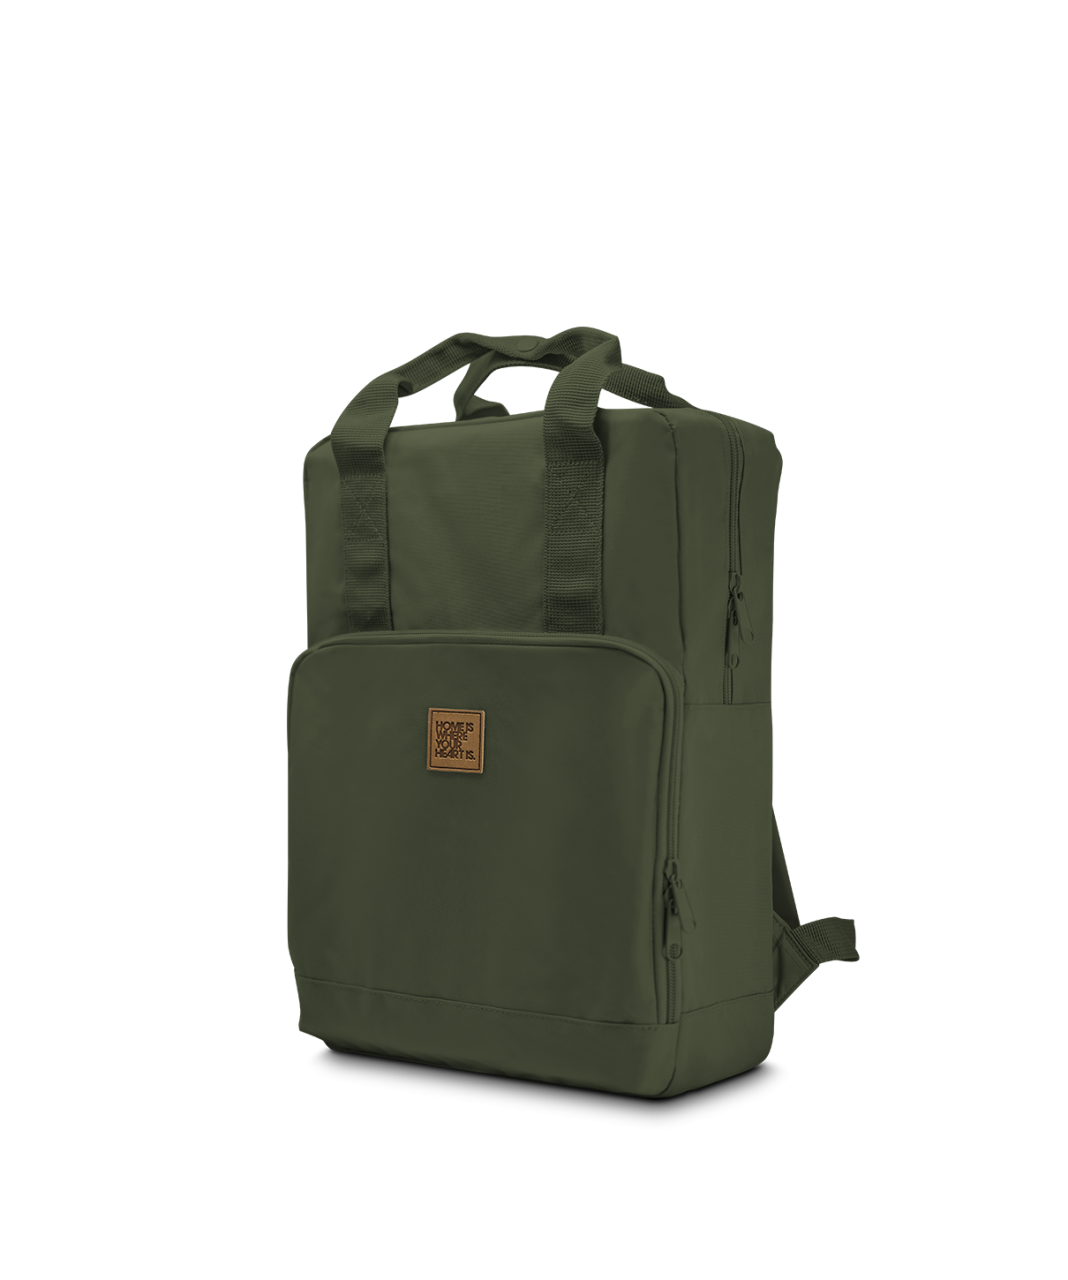 New Daypack Rucksack